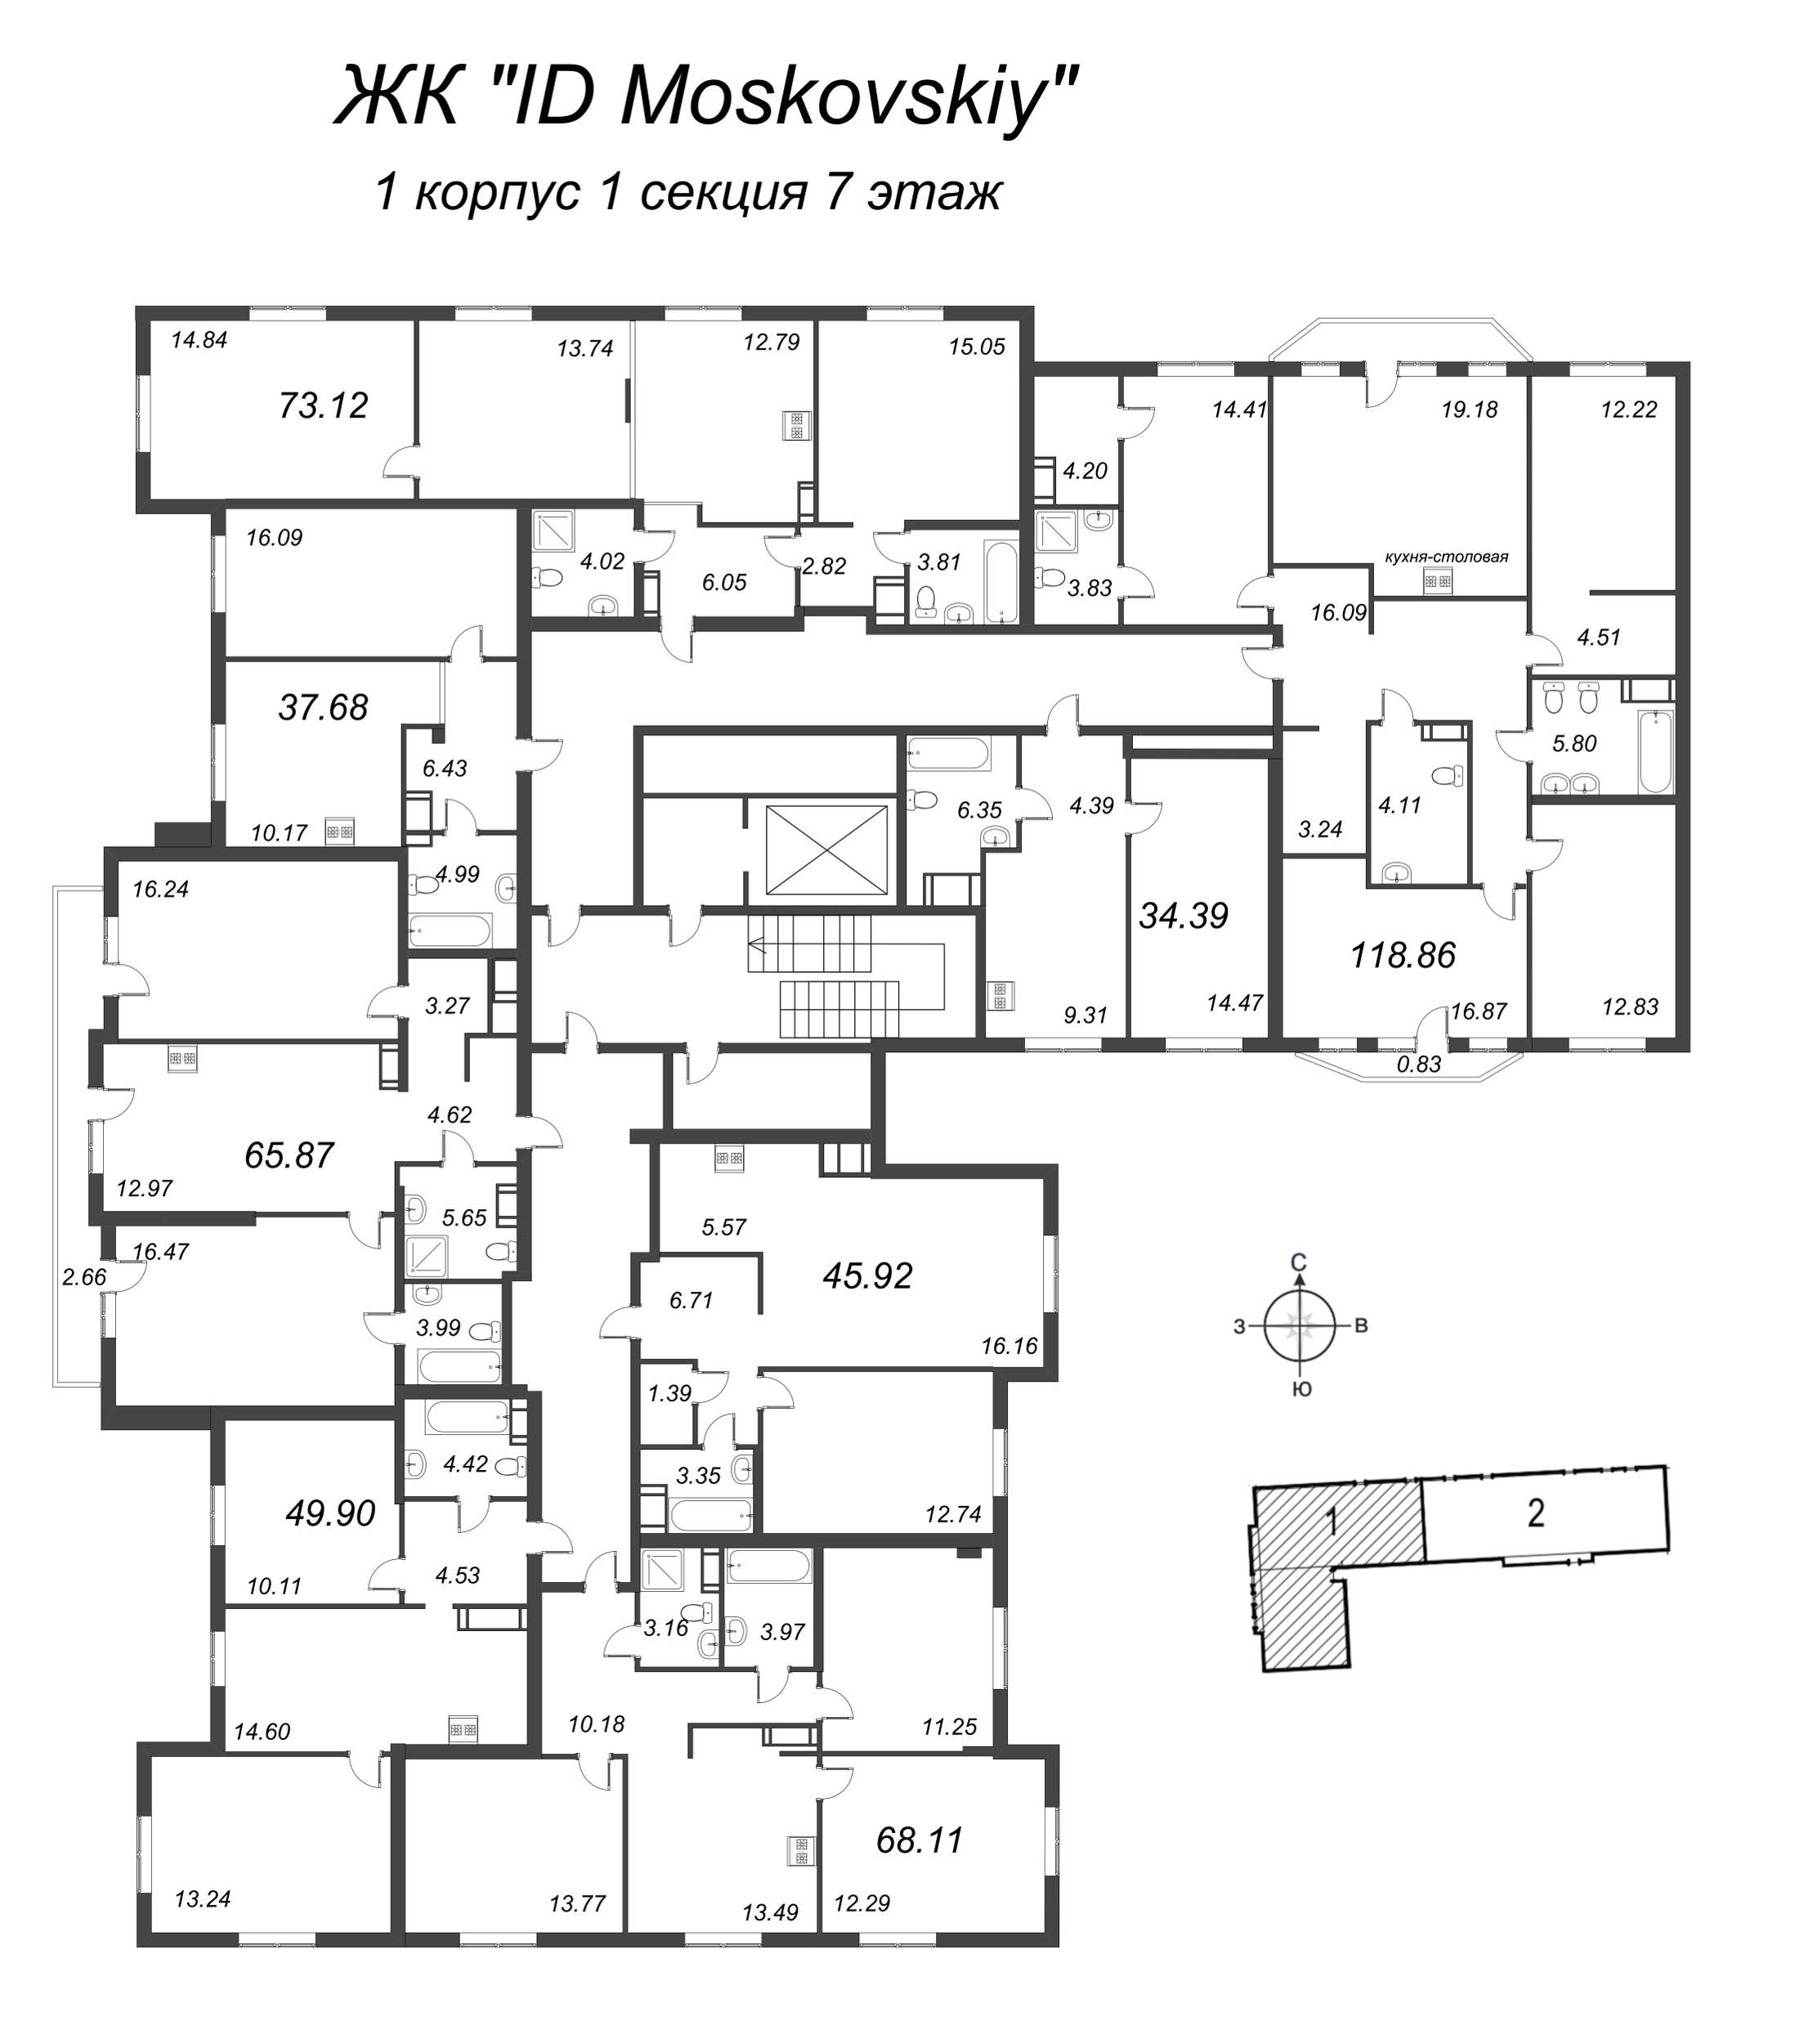 3-комнатная (Евро) квартира, 73.12 м² в ЖК "ID Moskovskiy" - планировка этажа